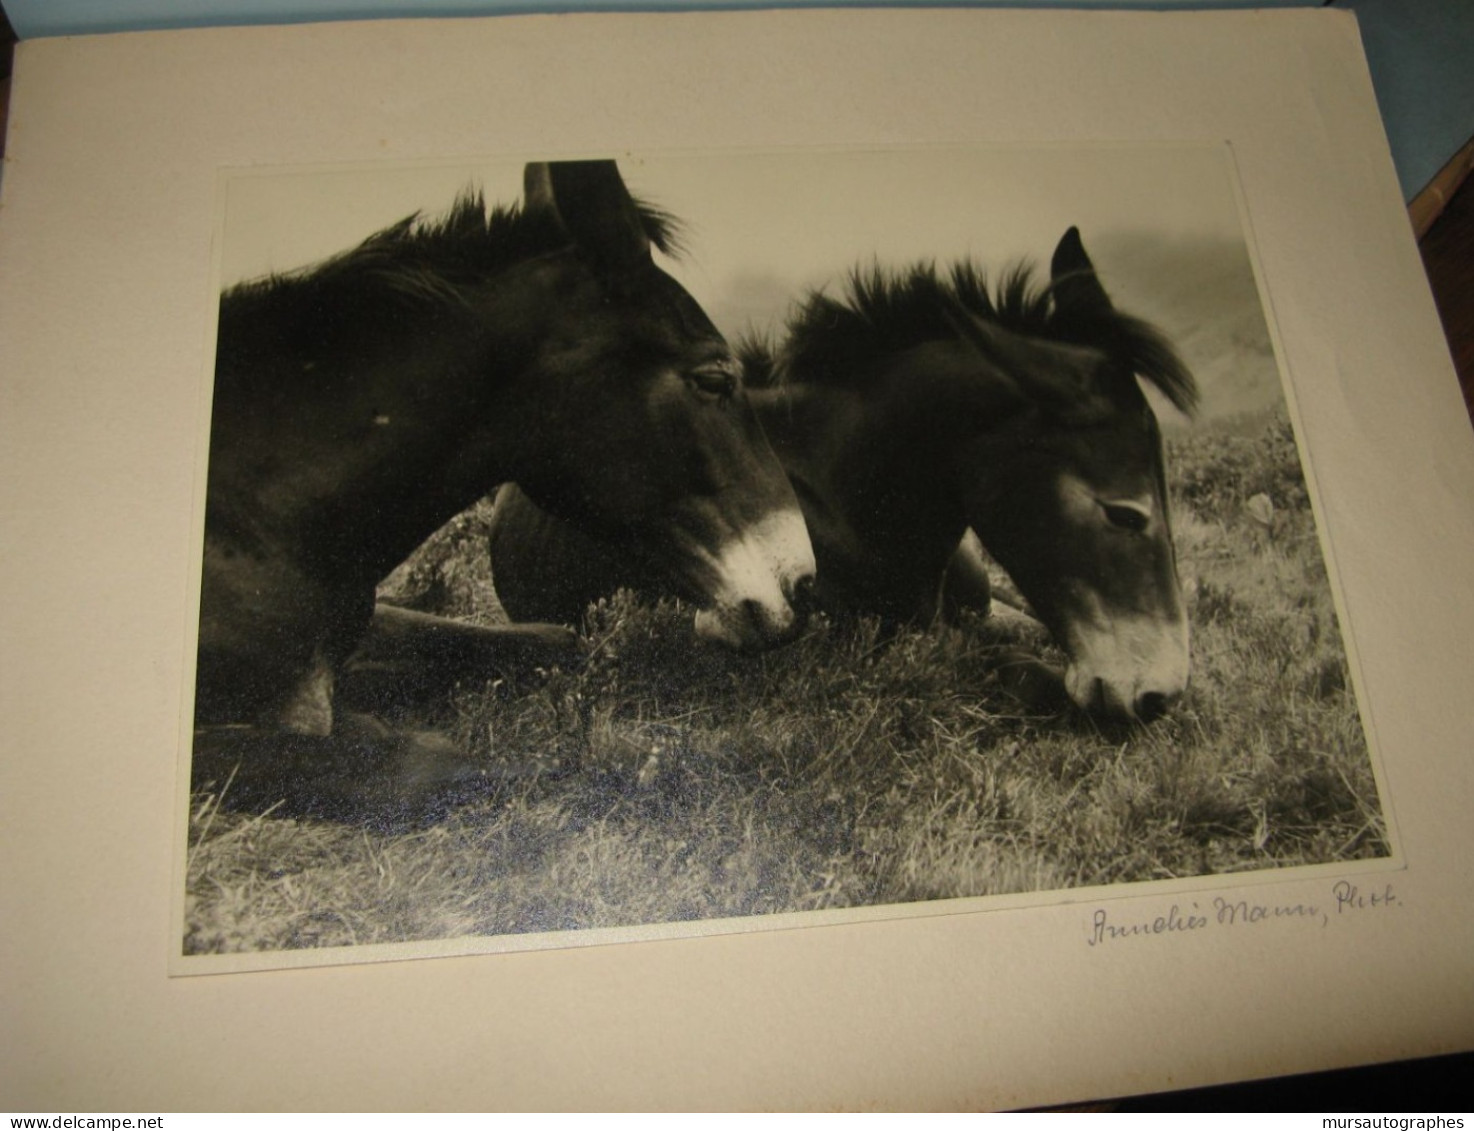 BELLE PHOTOGRAPHIE N&B "DEUX MULETS" Vers 1940-50 Signé ANNELIES MANN - Foto Dedicate